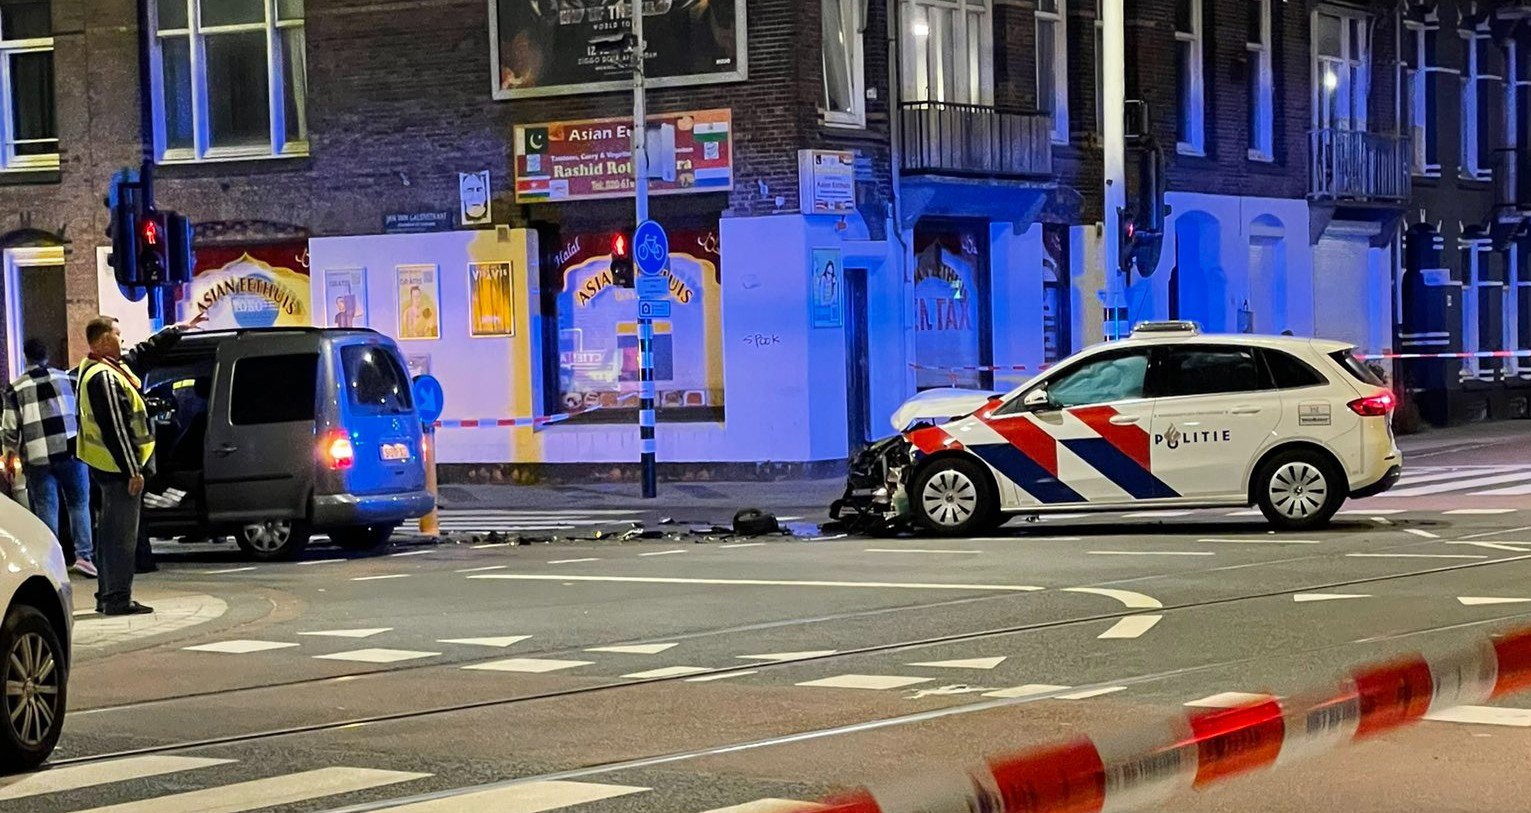 Ongeval met meerdere voertuigen, waaronder politiewagen in Amsterdam.